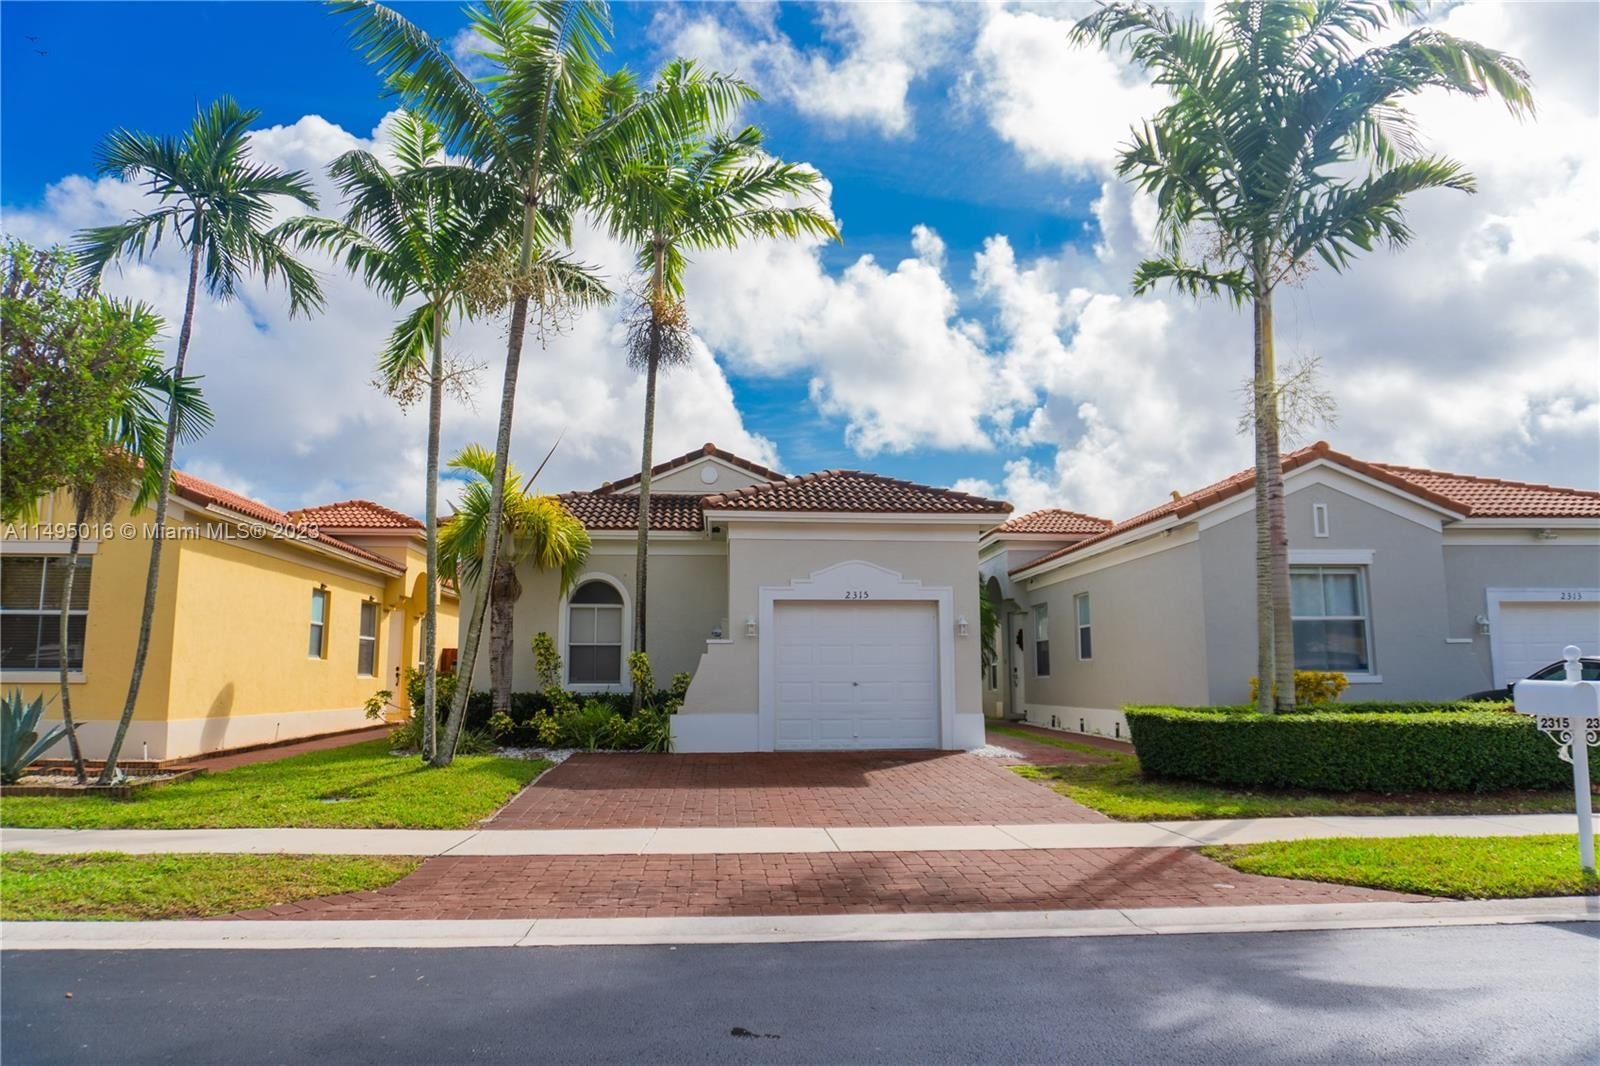 Real estate property located at 2315 37th Ter, Miami-Dade County, PORTOFINO BAY, Homestead, FL